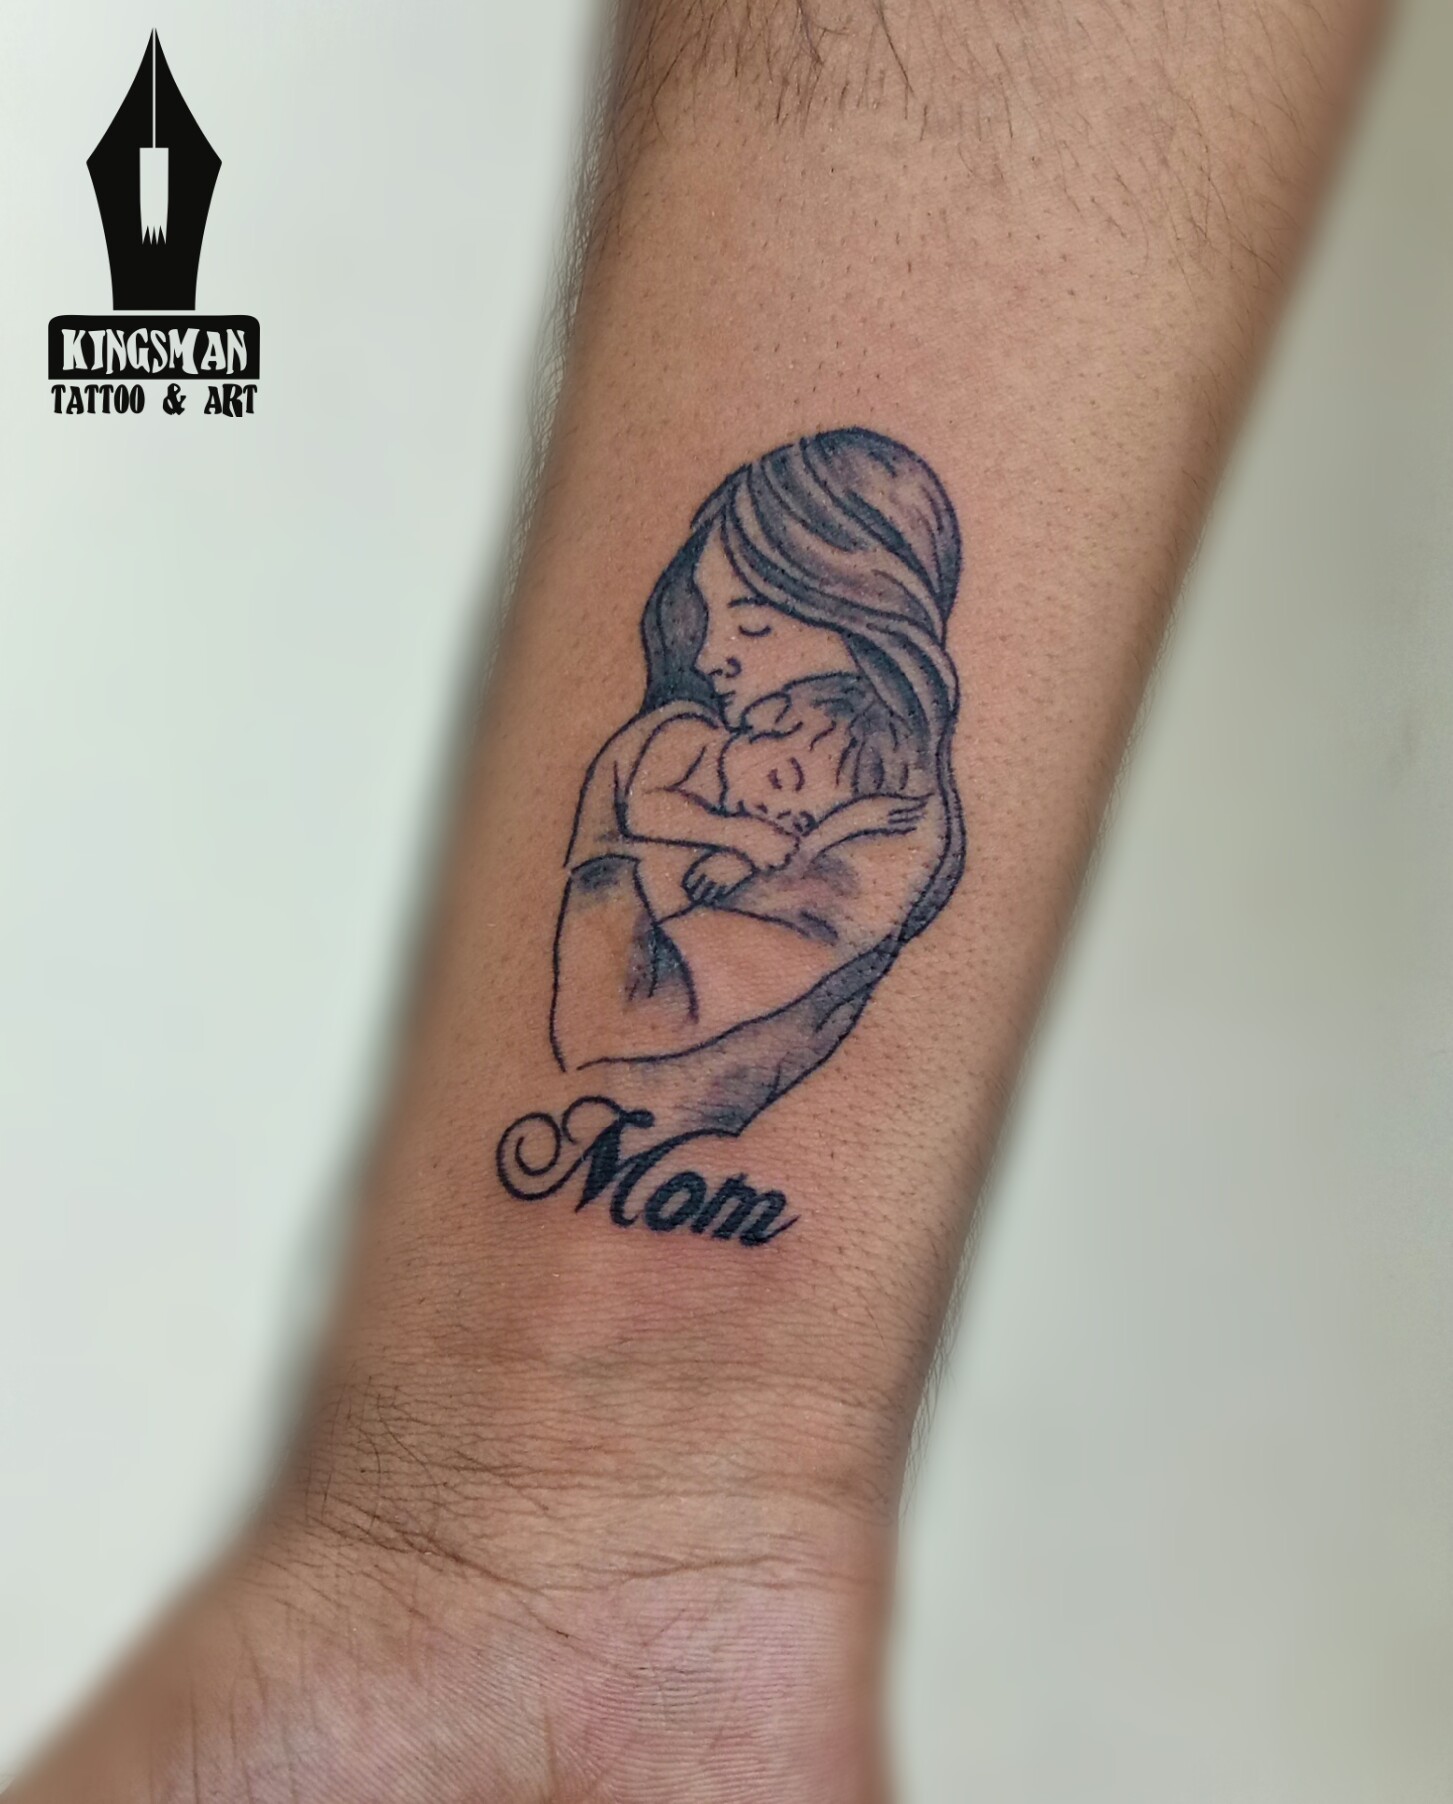 Kingsman Tattoo & Art - Suratwale